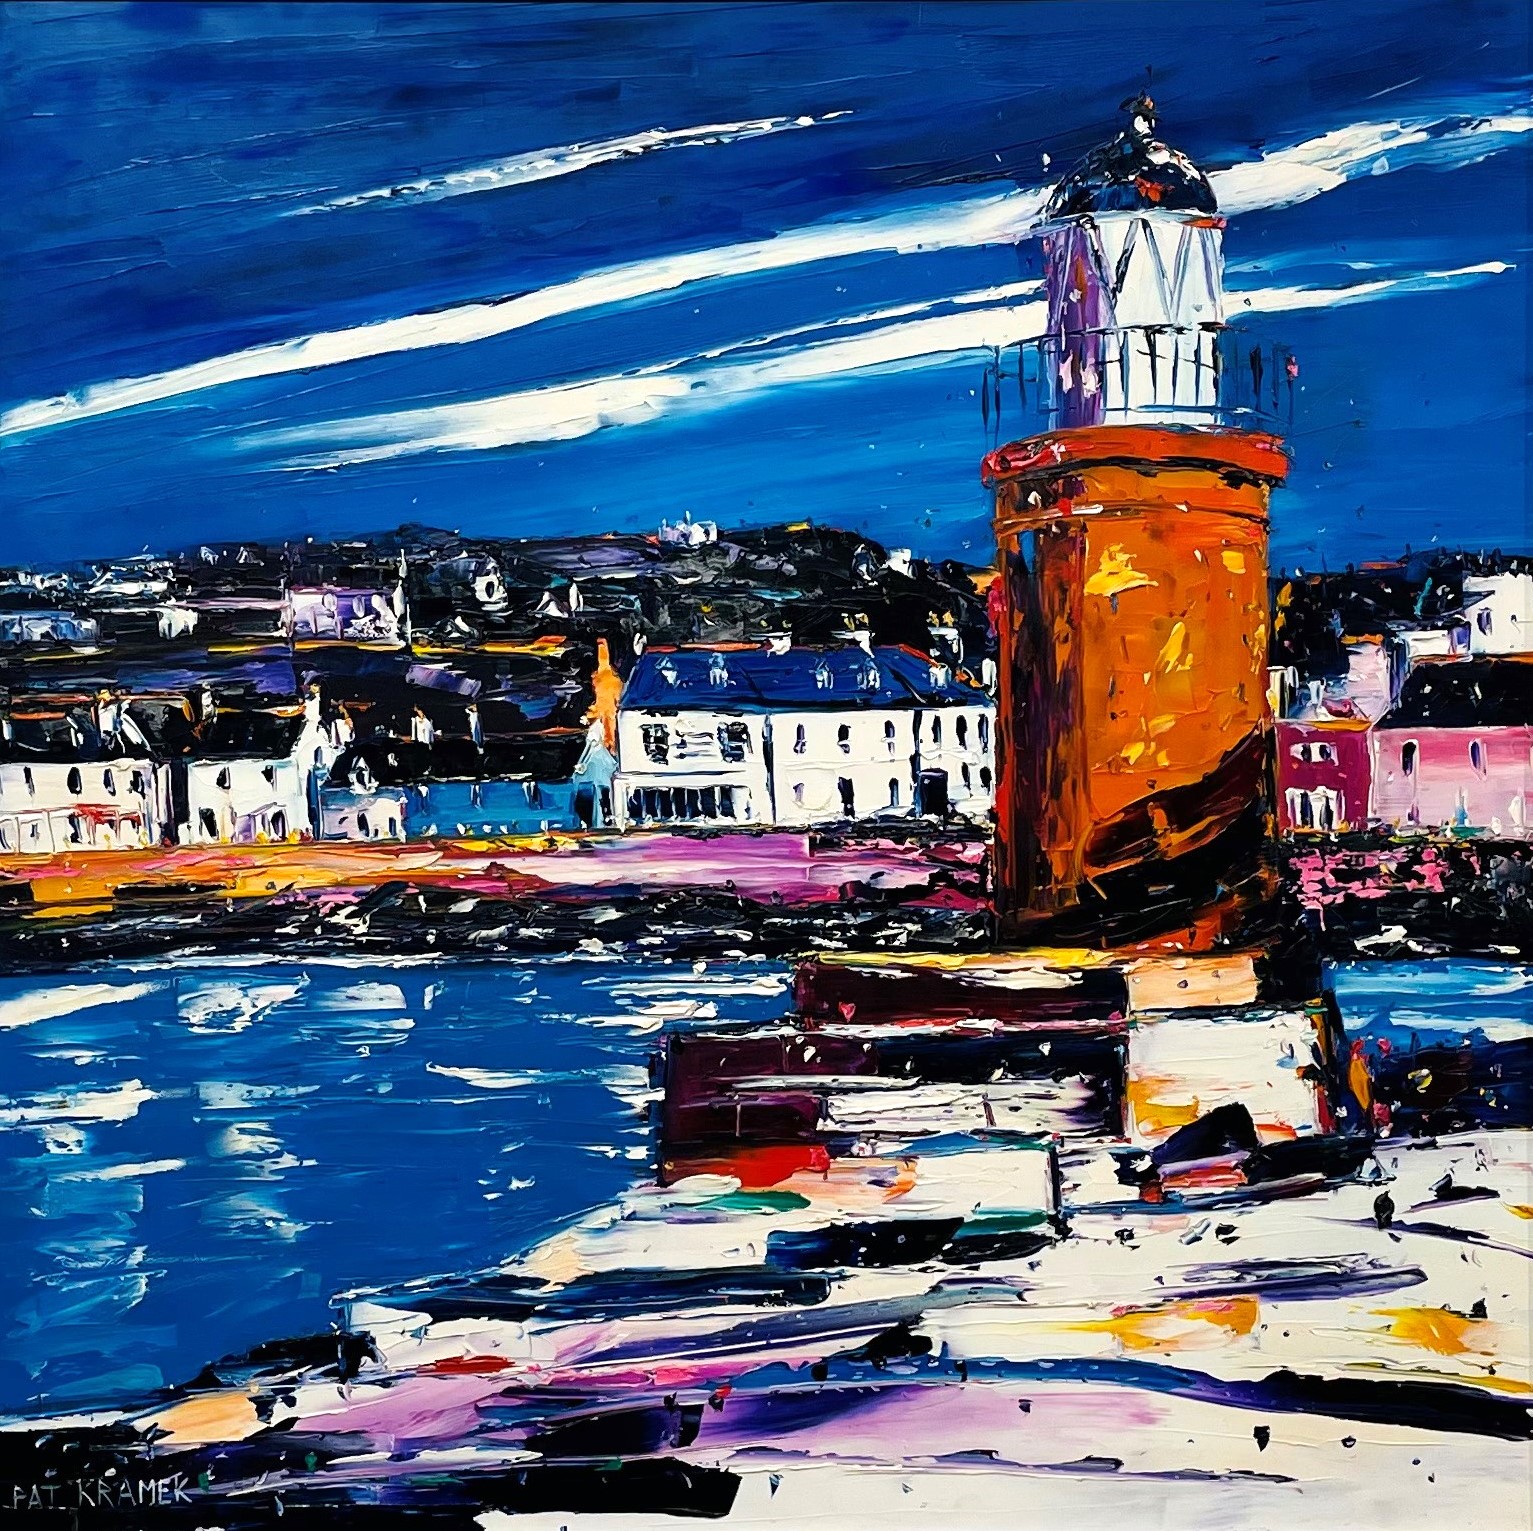 'Portpatrick Lighthouse' by artist Pat Kramek